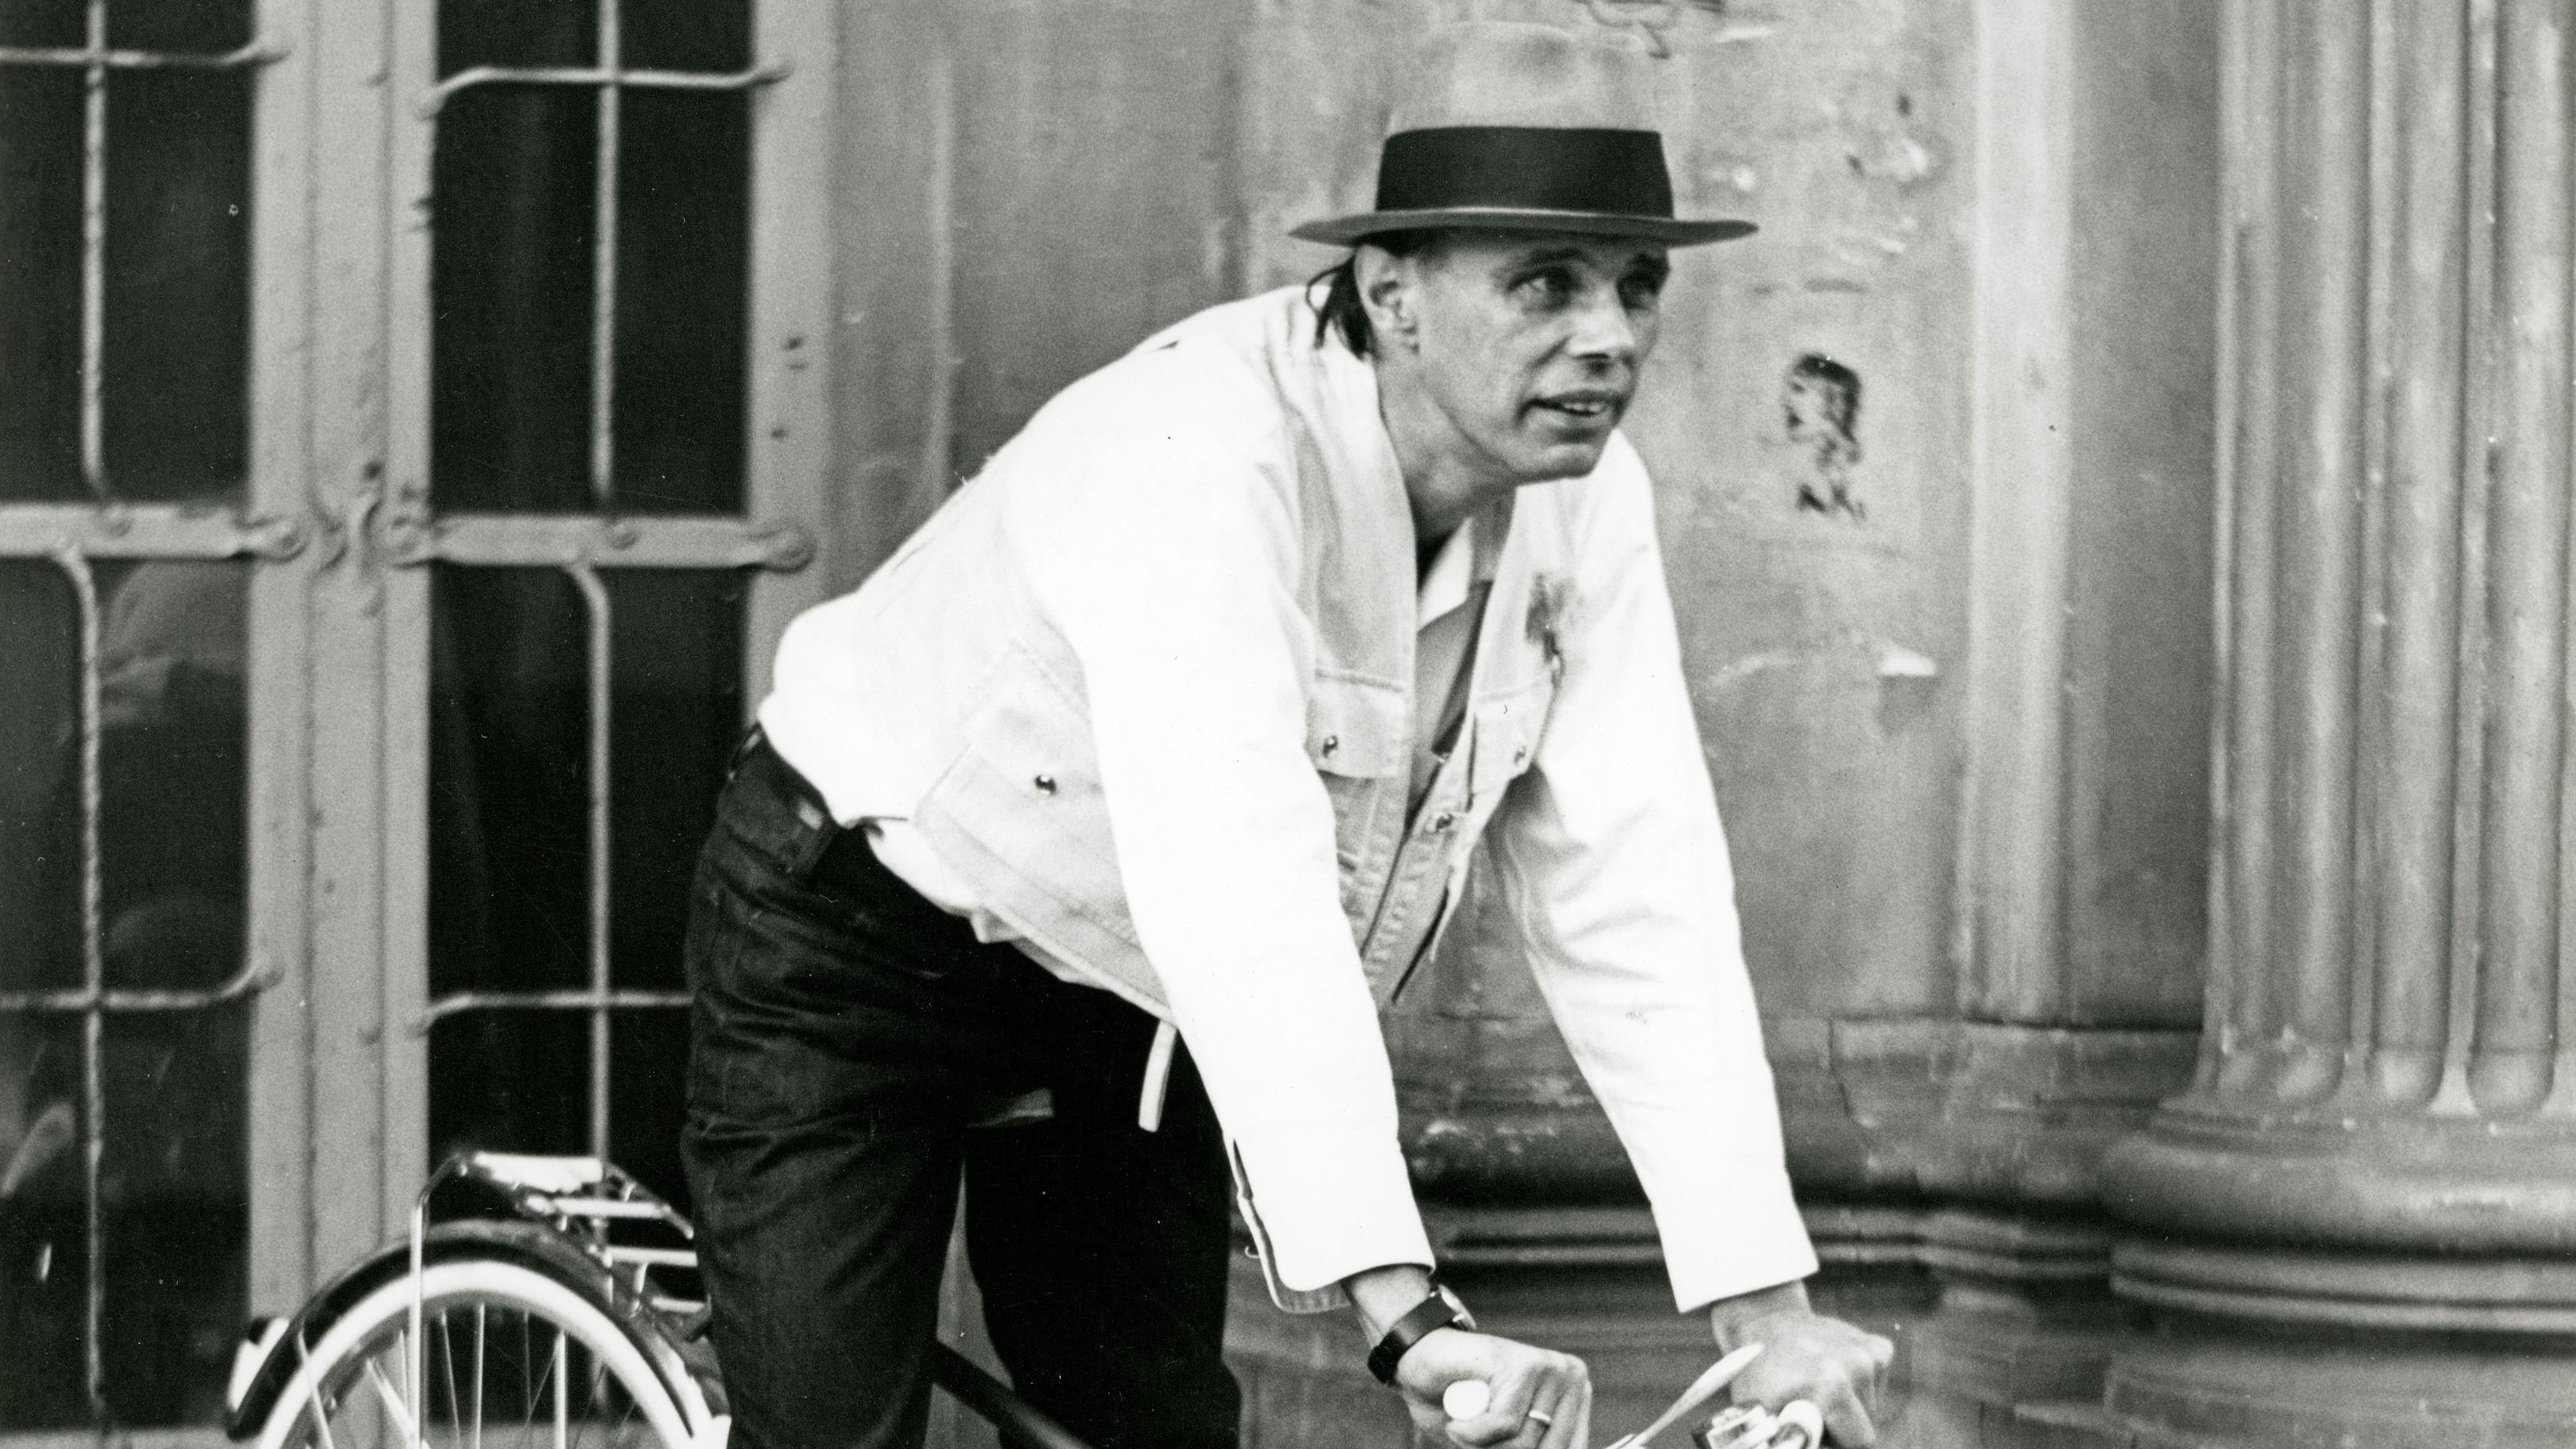 Beuys fährt ii Mountainbike-Stil, gekleidet mit weißem Hemd und dunkler Hose, drei flache Steinstufen hinunter.